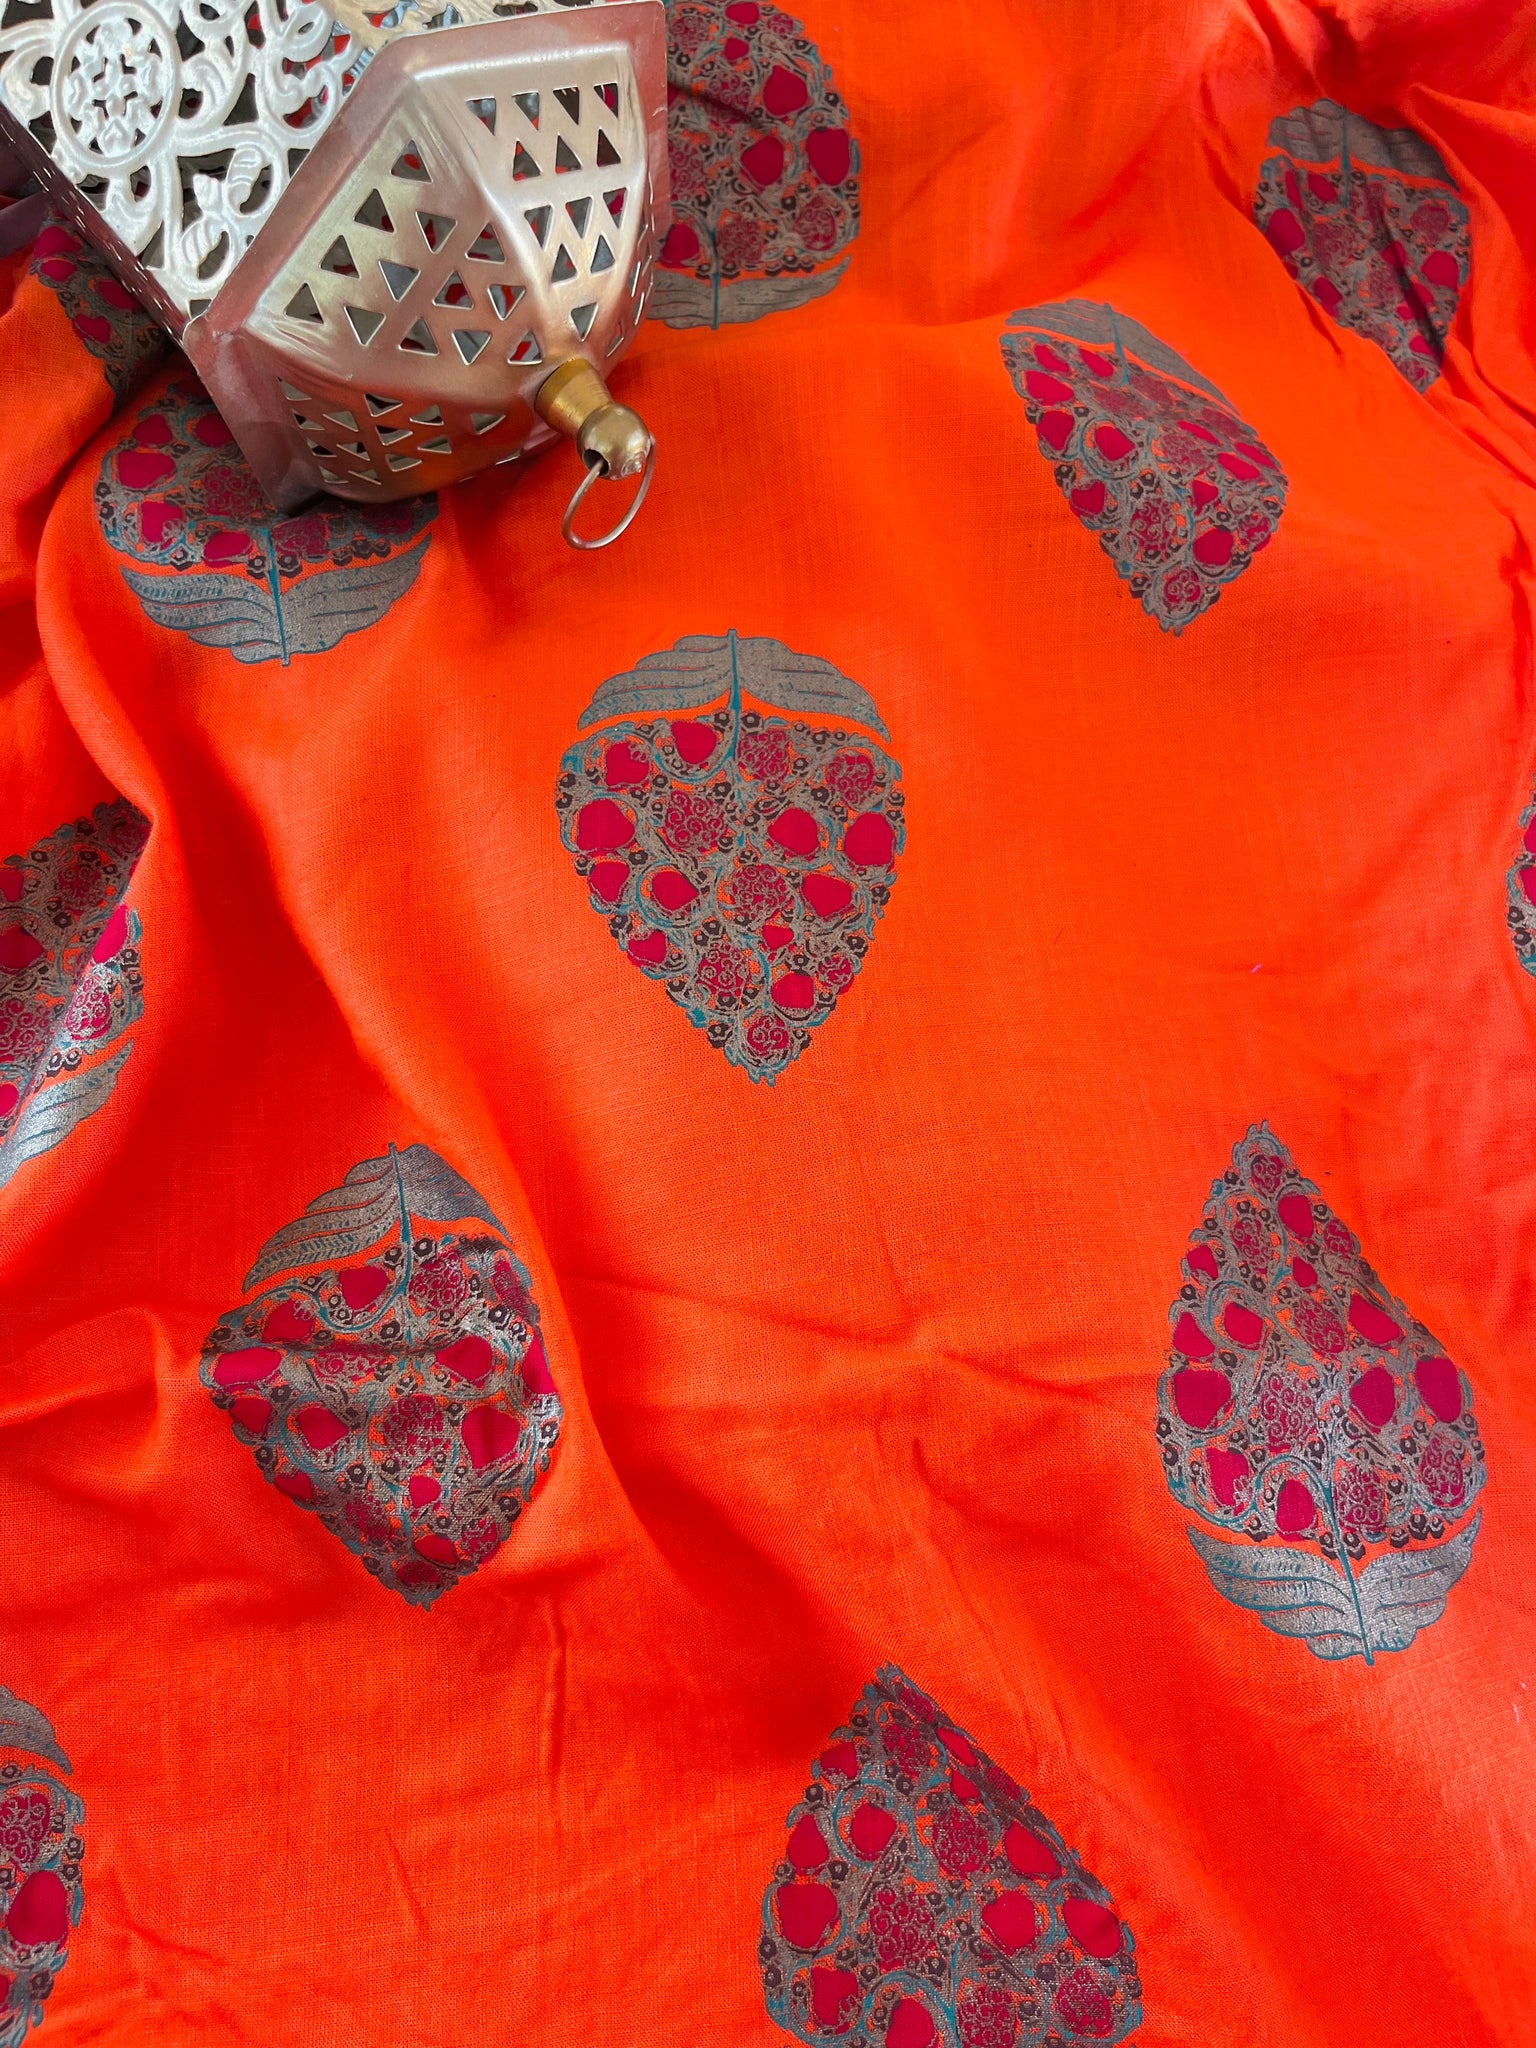 Kolkata Orange Foil Printed Fabric